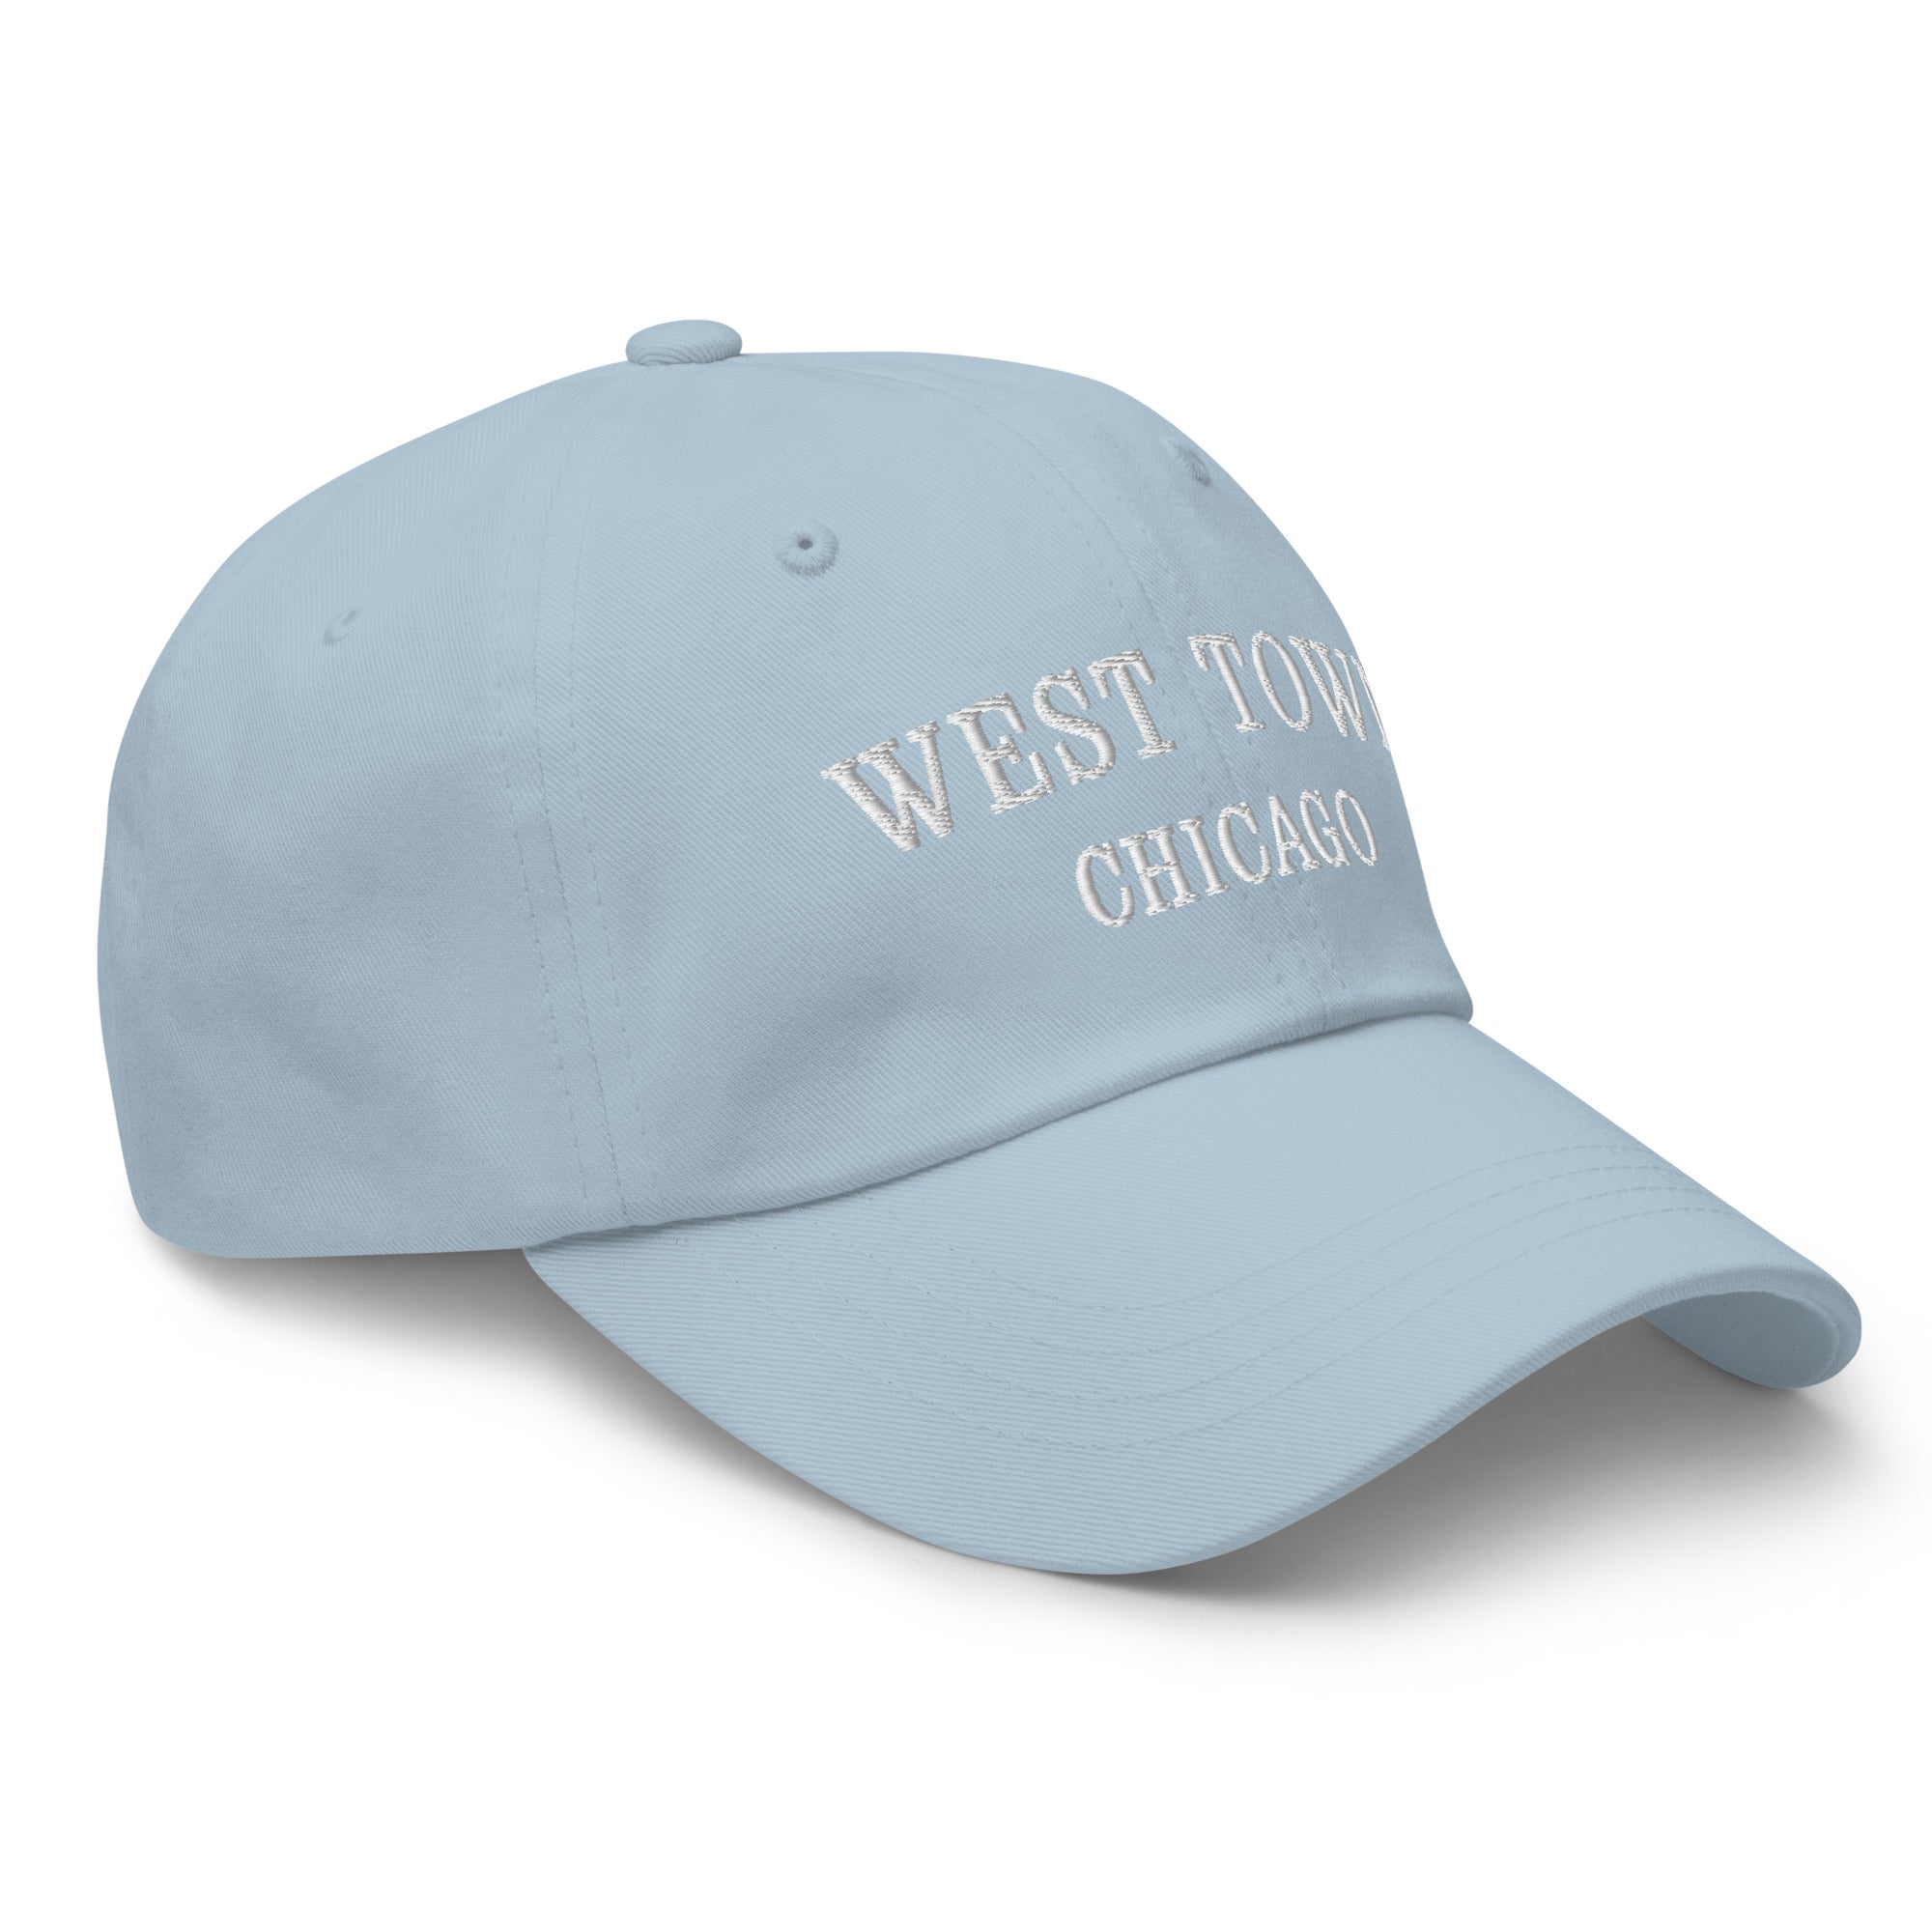 West Town Chicago Dad Hat - White Stitching